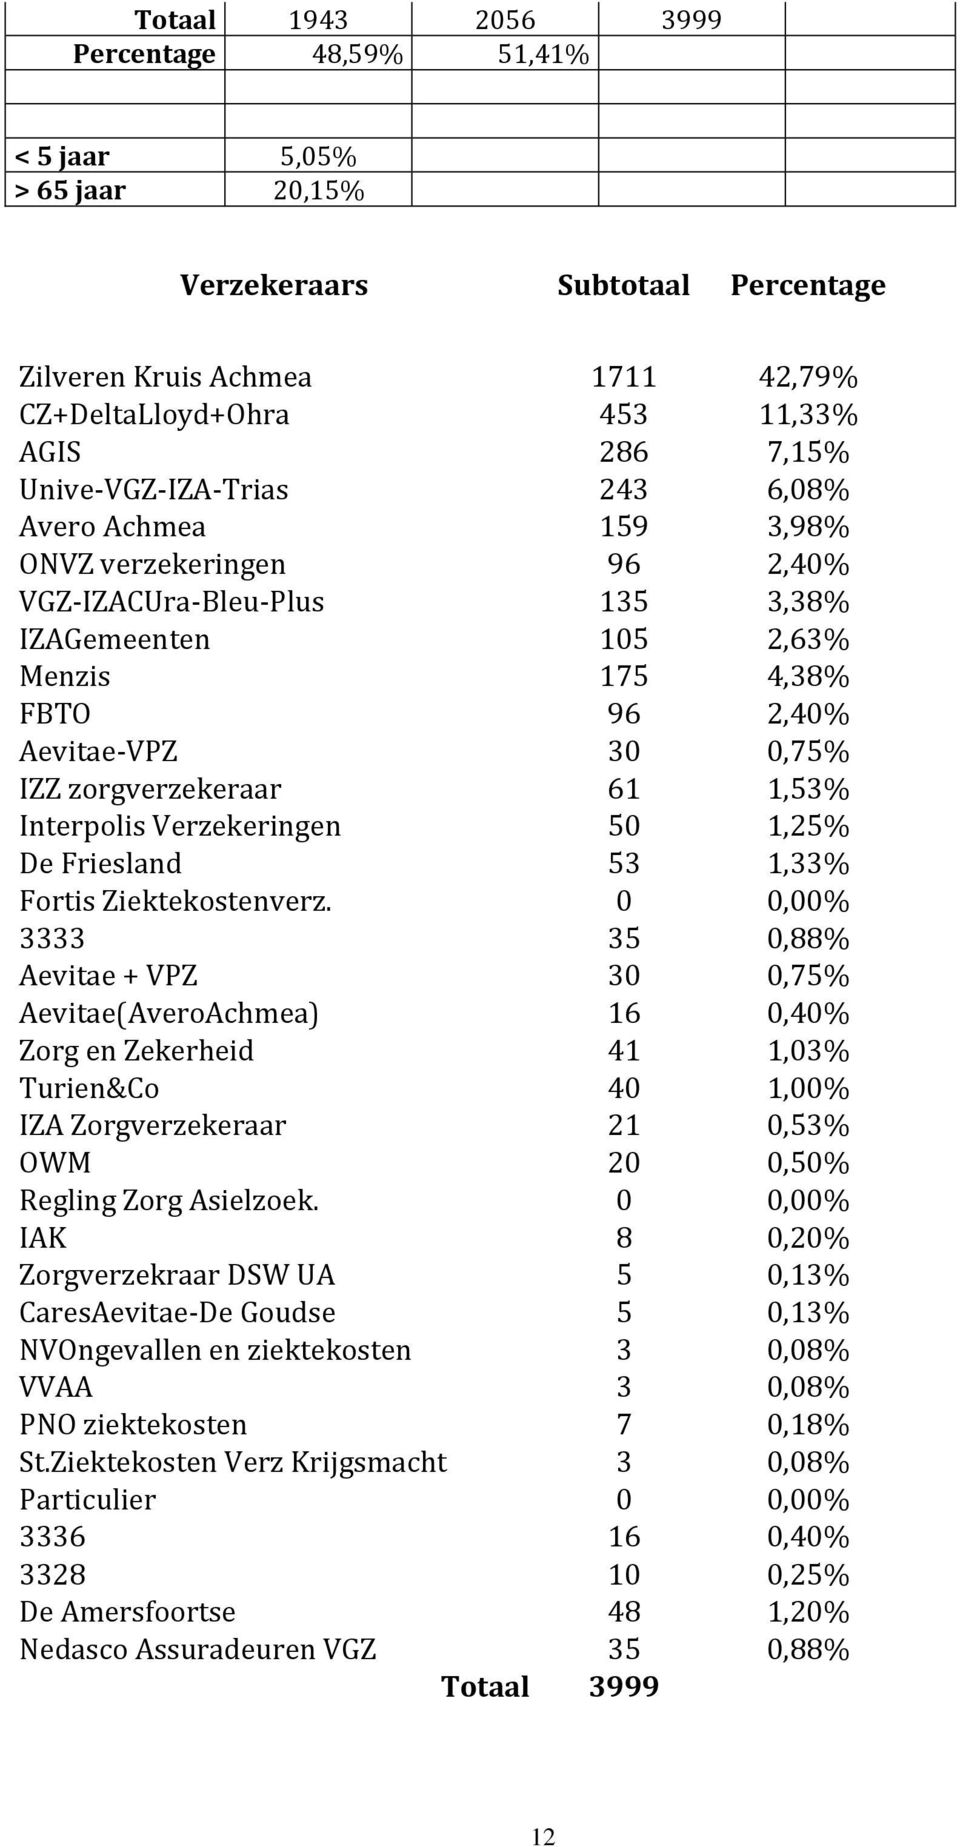 zorgverzekeraar 61 1,53% Interpolis Verzekeringen 50 1,25% De Friesland 53 1,33% Fortis Ziektekostenverz.